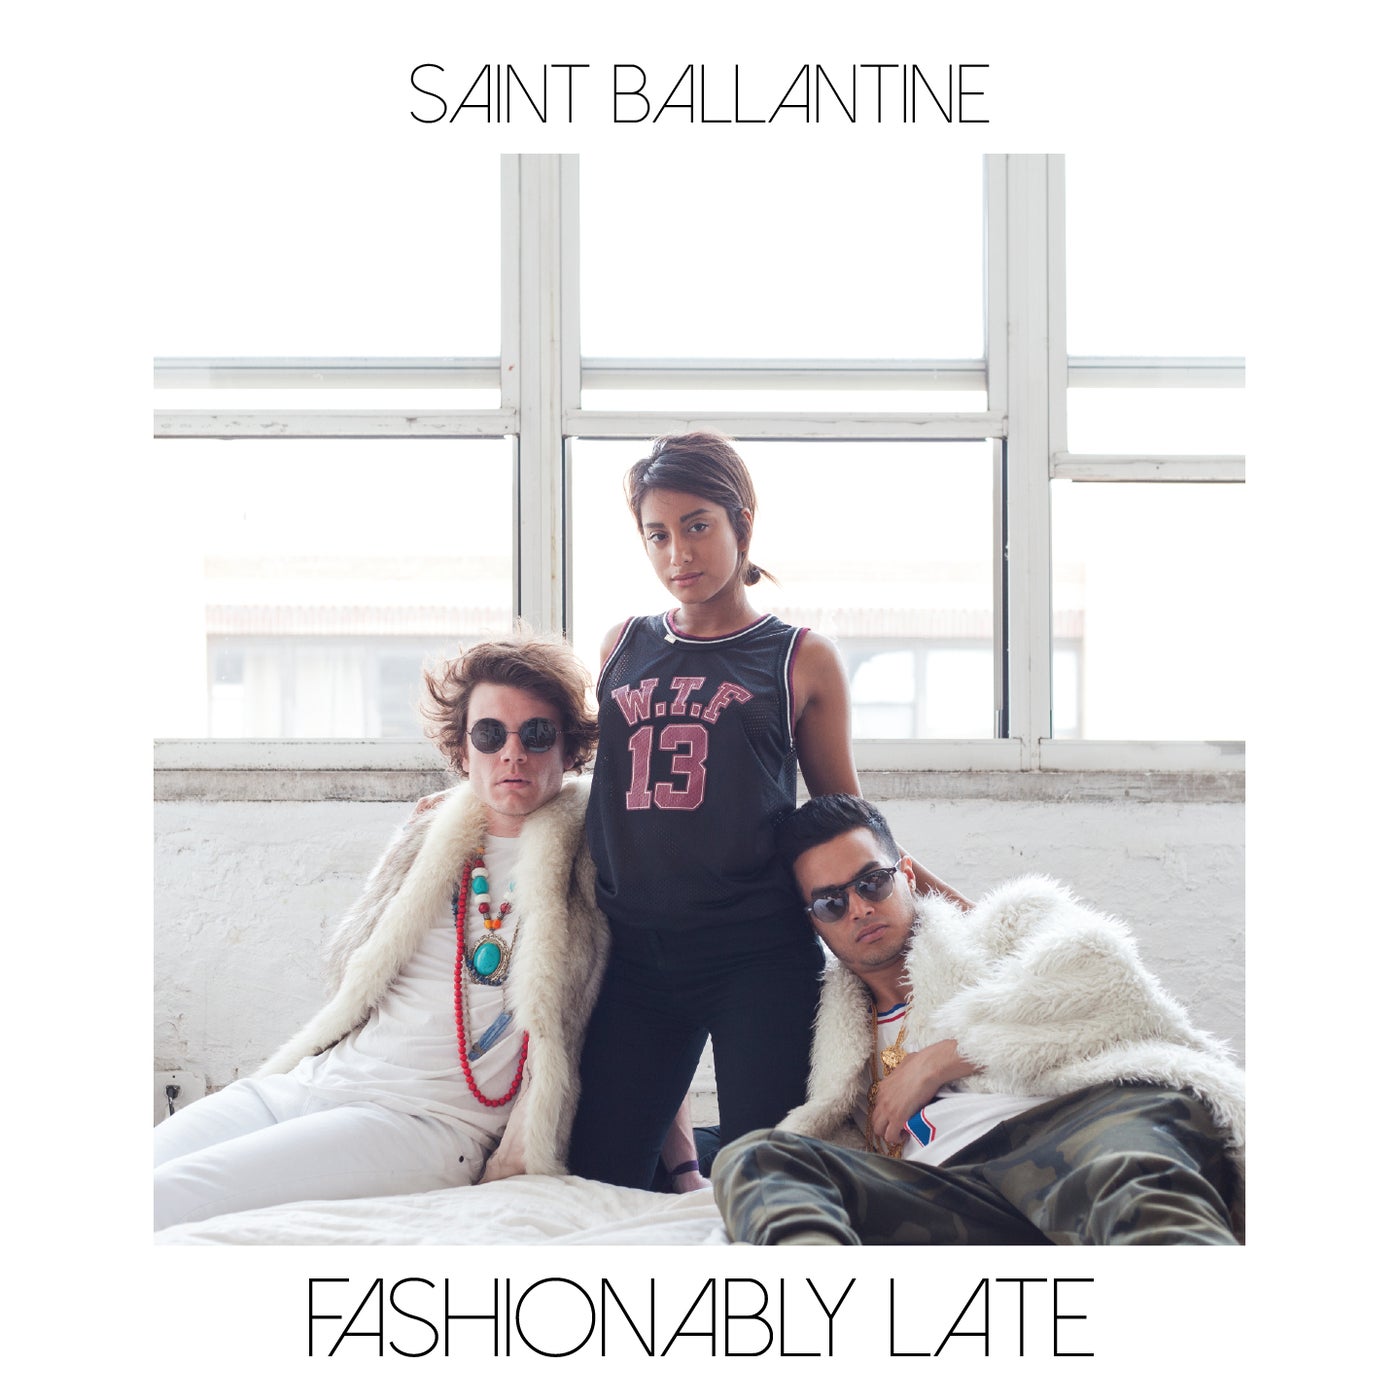 Fashionably Late (feat. Amrit) by Amrit and Saint Ballantine on Beatsource